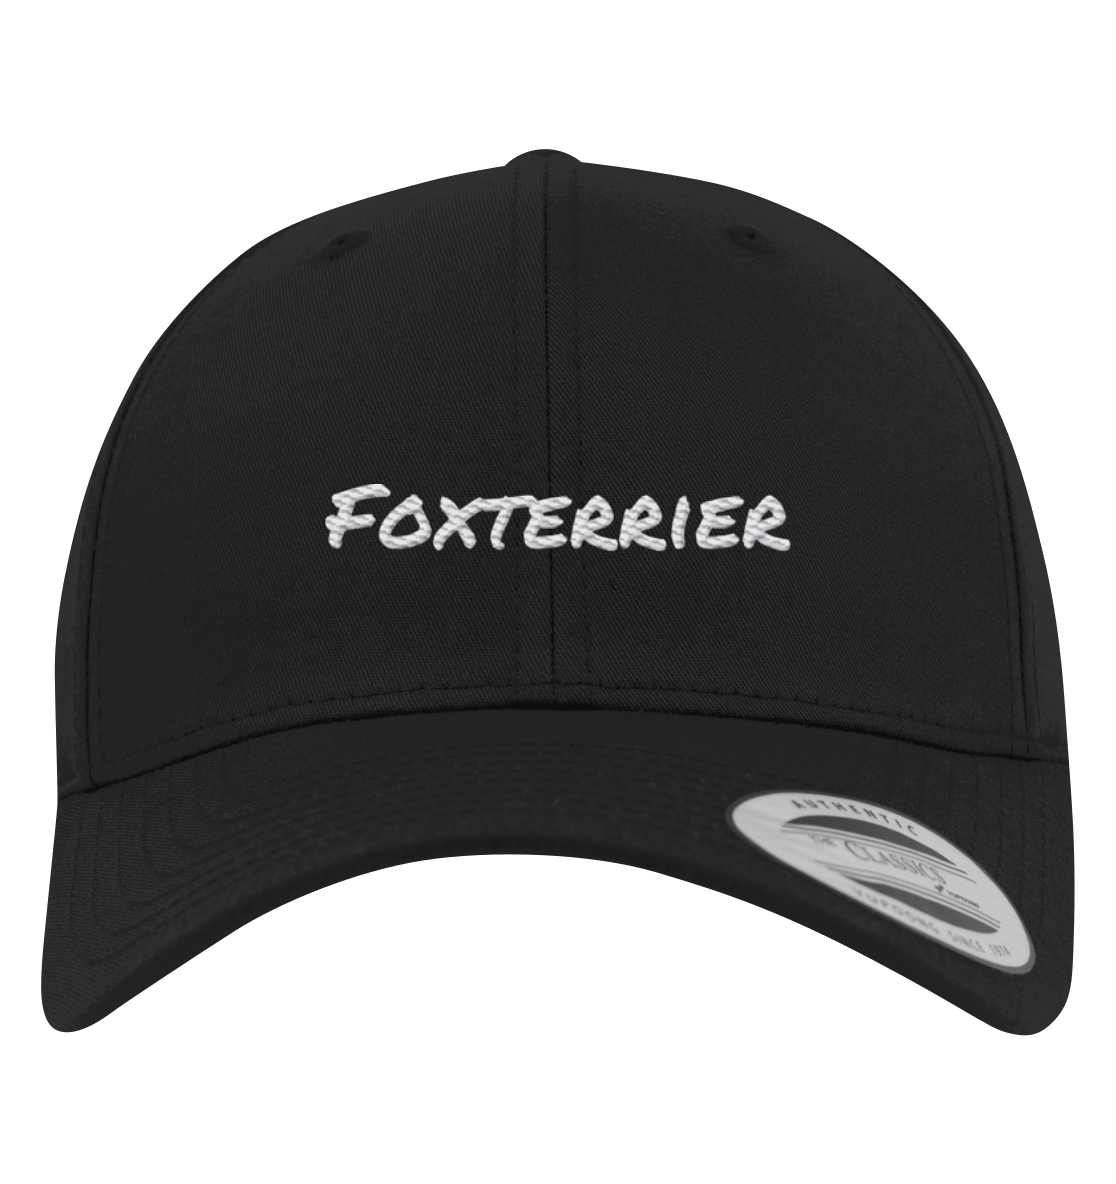 Foxterrier - Premium Baseball Cap